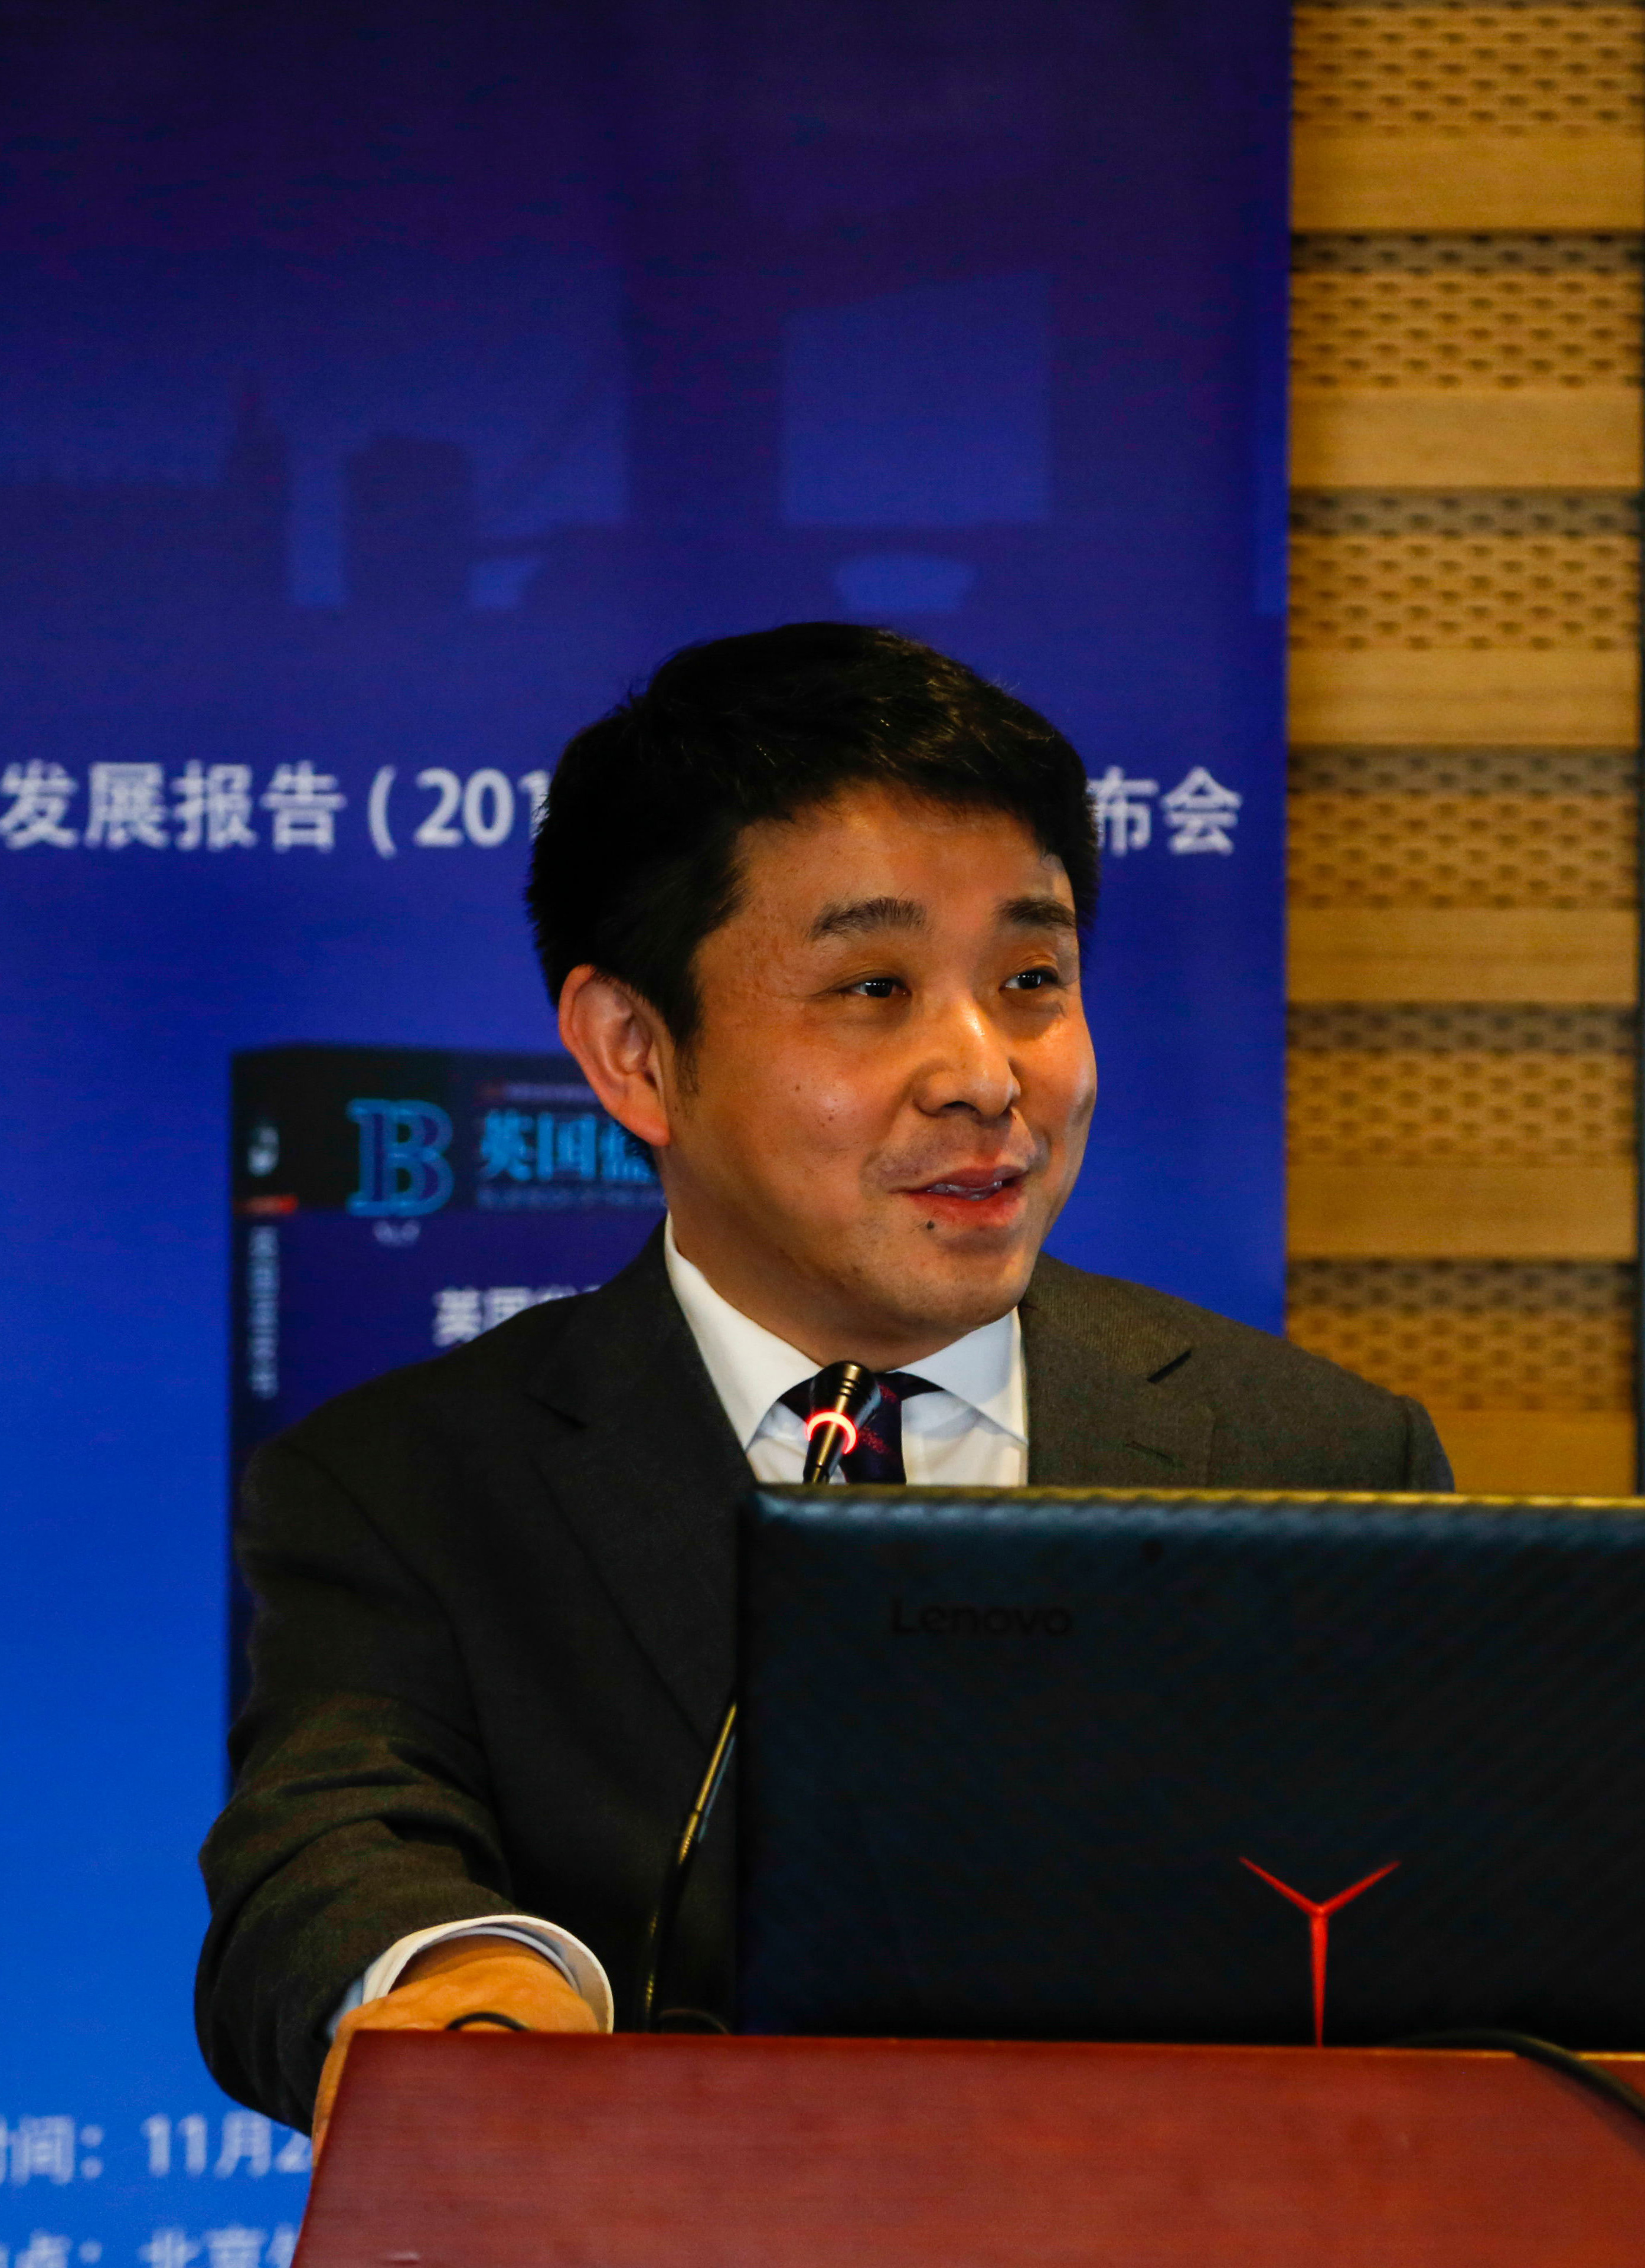 Wang Zhanpeng